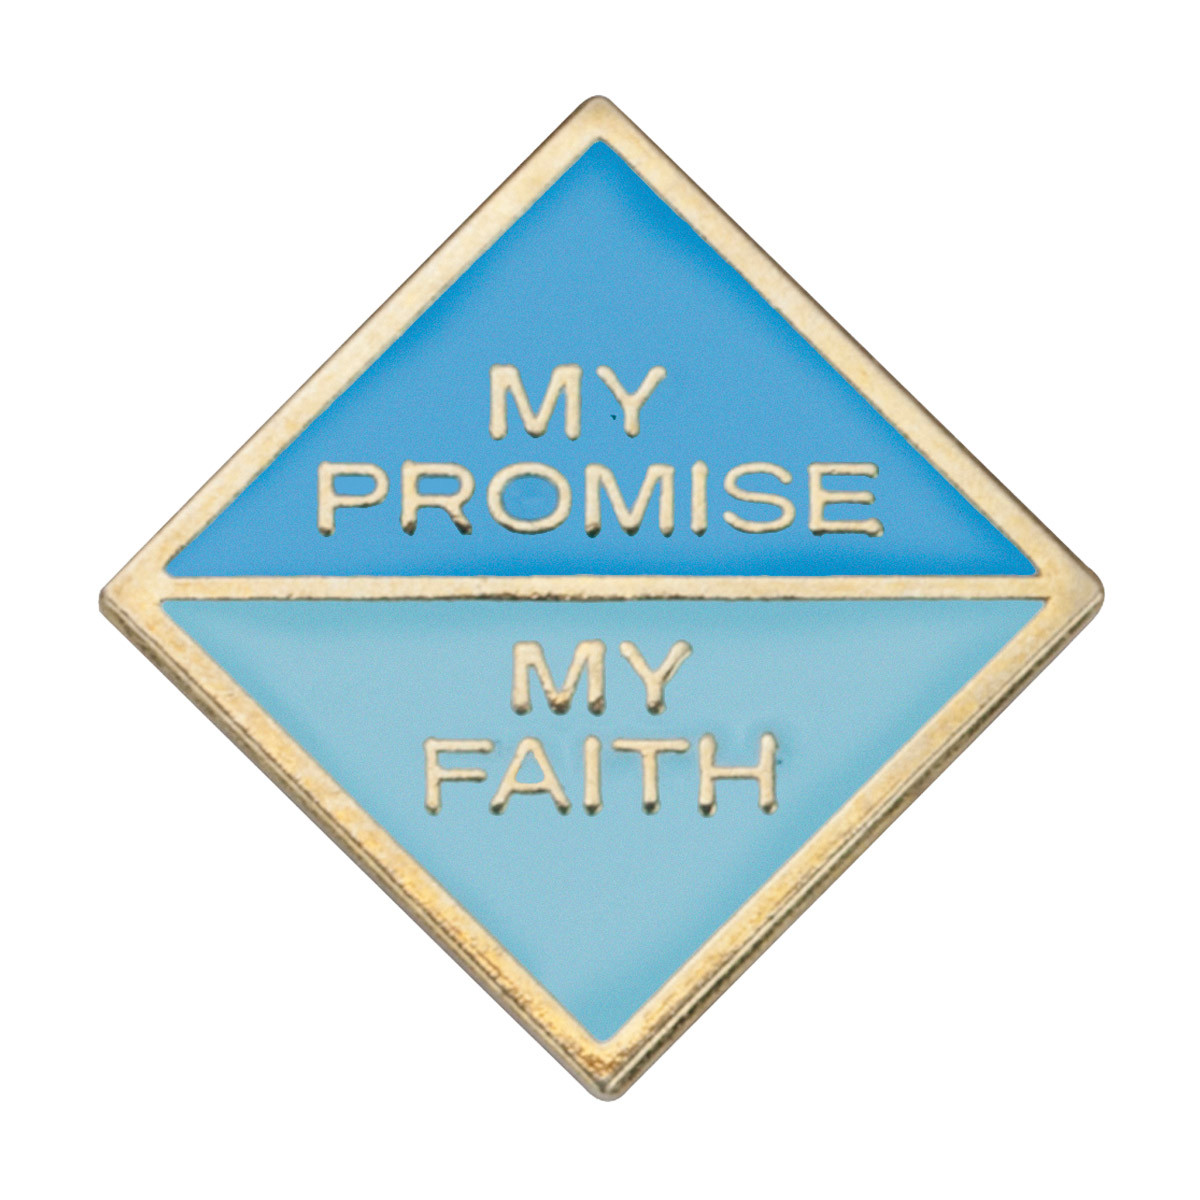 Daisy My Promise My Faith 2